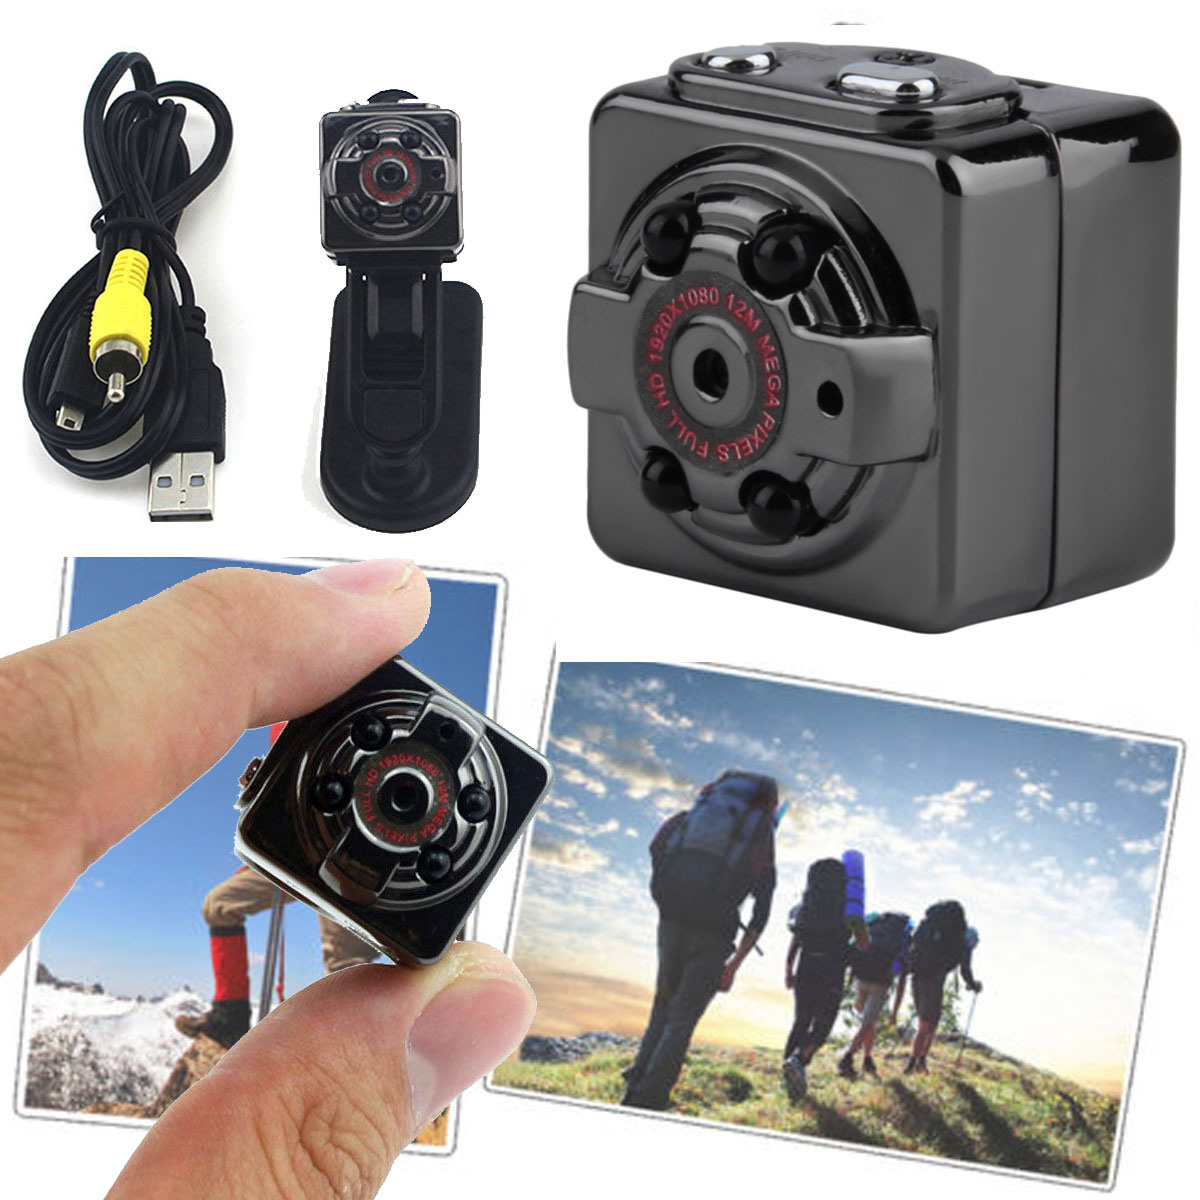 Sq8 videocamera video recording camera video mini camera